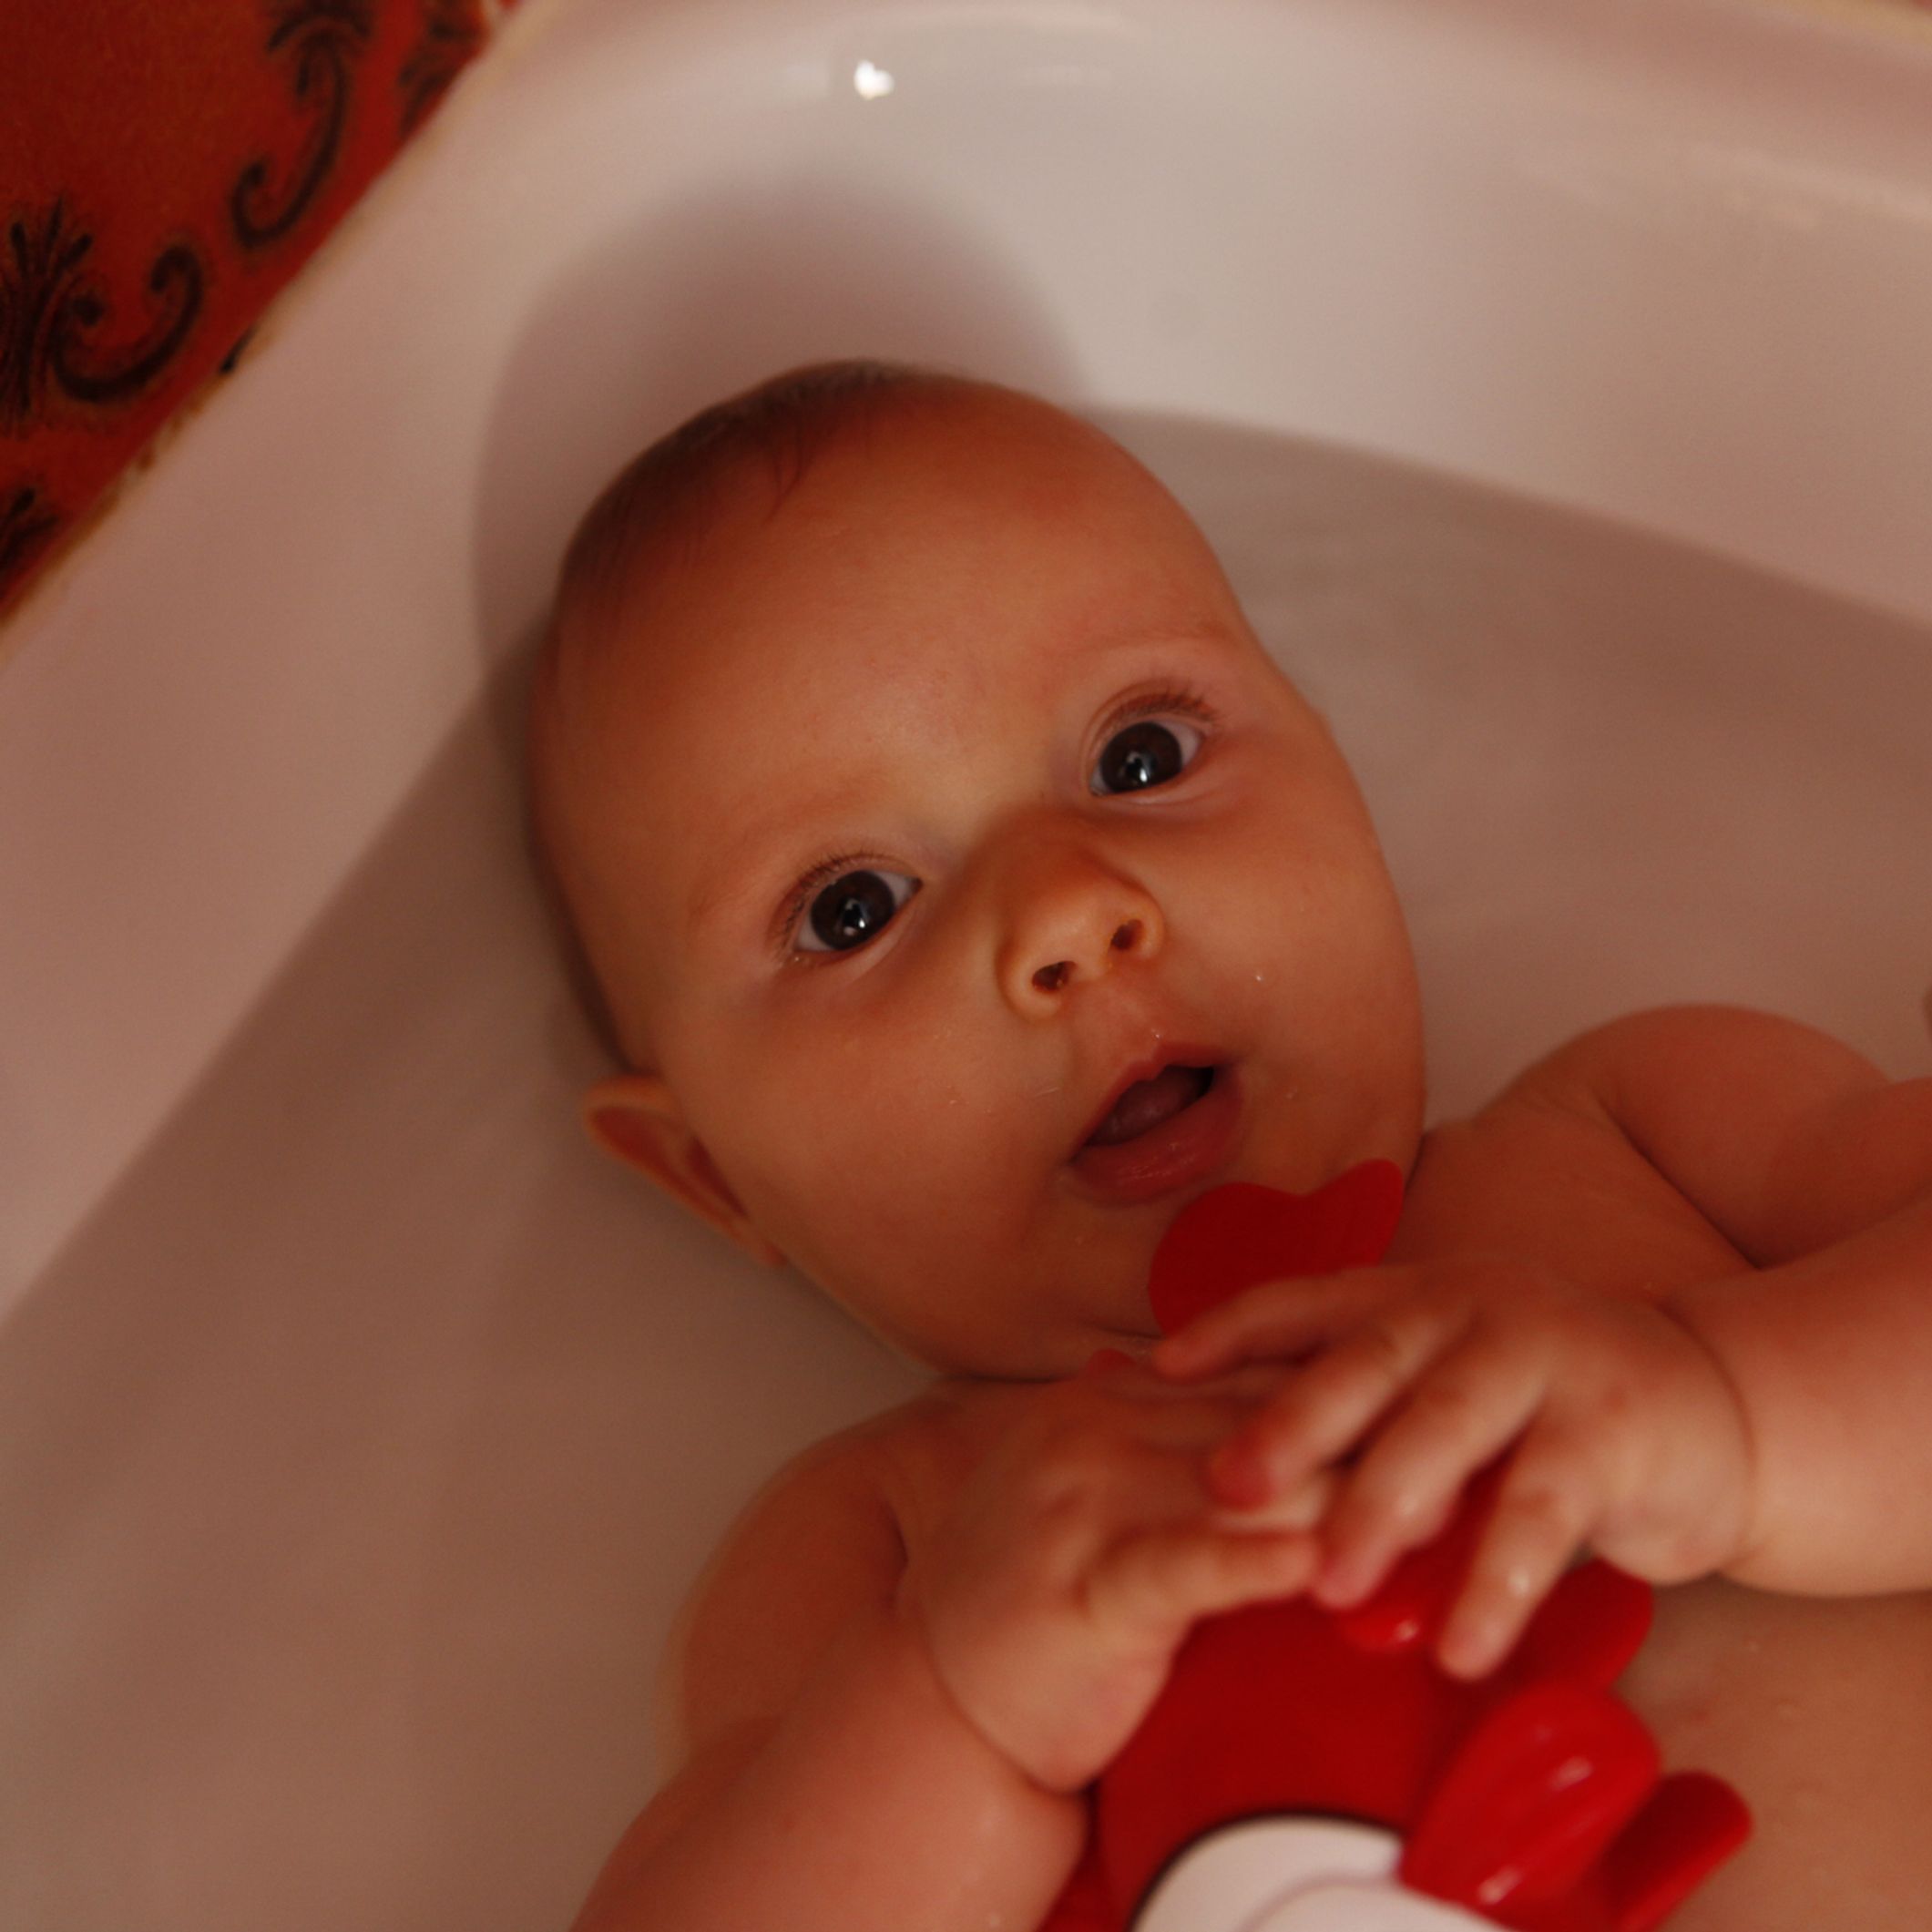 Quand peut-on mettre bébé dans la grande baignoire ?